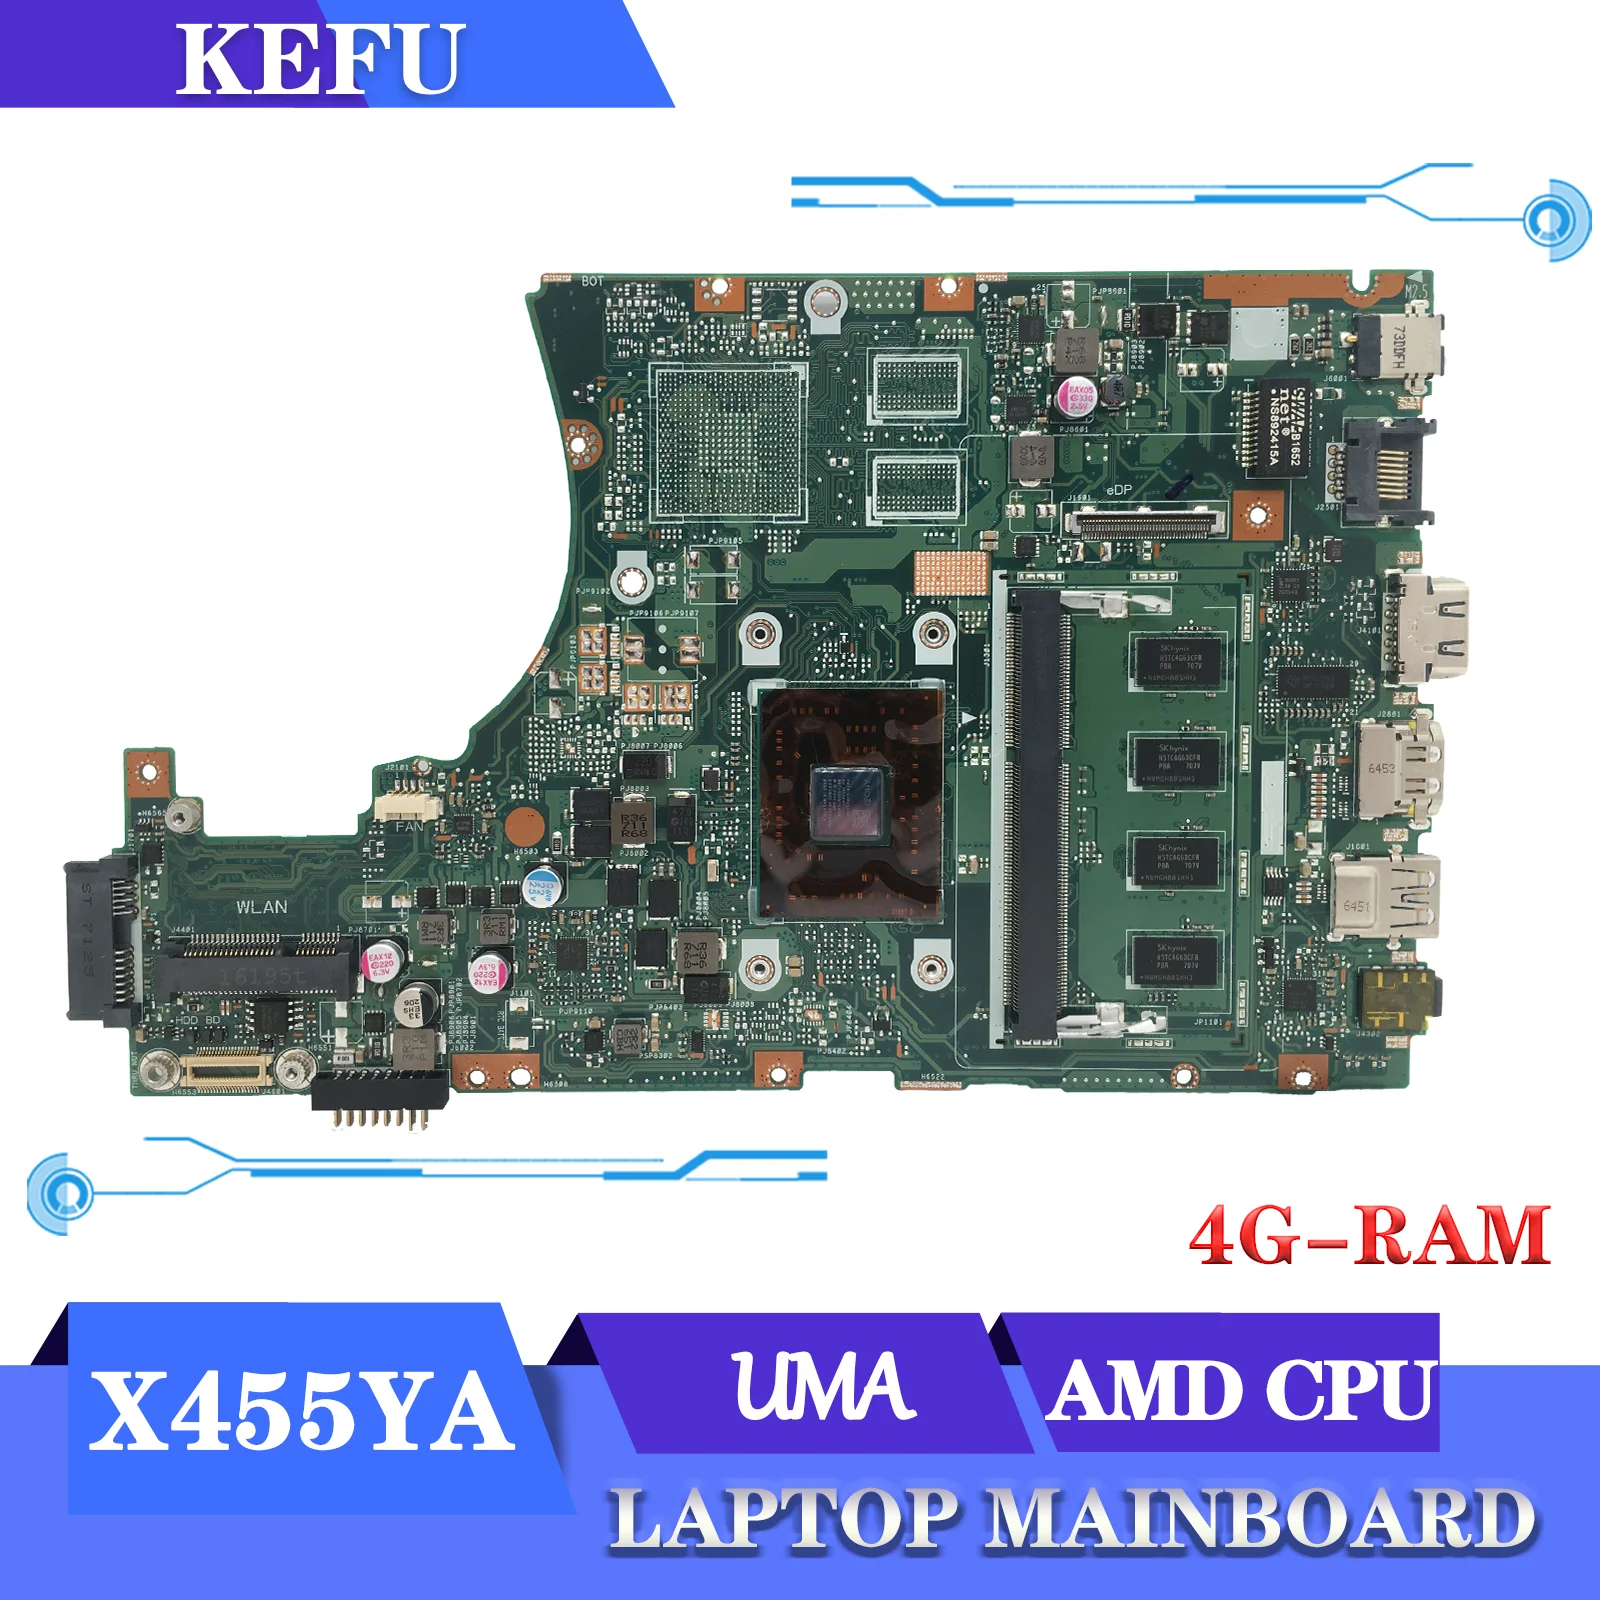 

Notebook X455YA Mainboard For ASUS X455YI R454Y R455Y X455Y K455Y F455Y A455Y Laptop Motherboard AMD CPU 4GB-RAM UMA